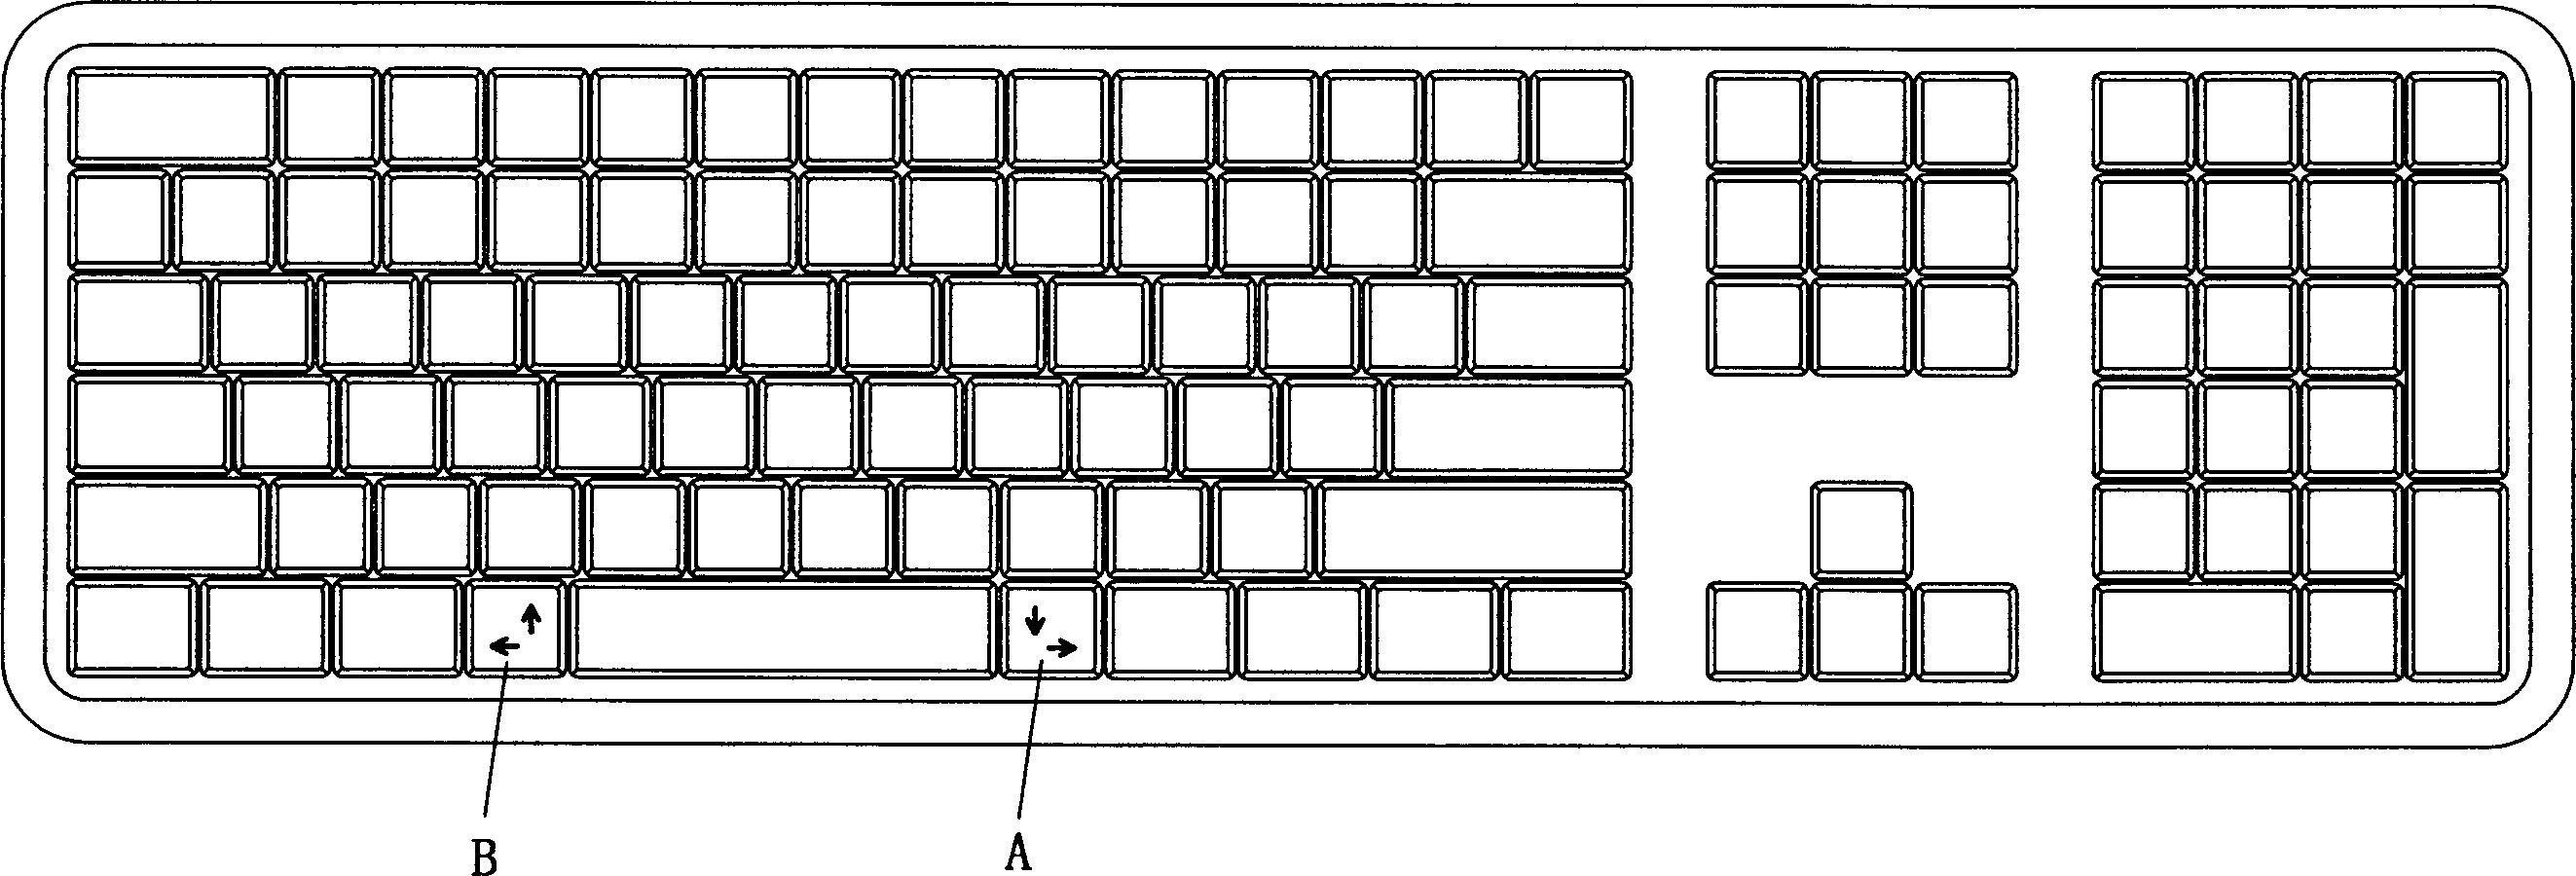 电脑键盘平面图图片